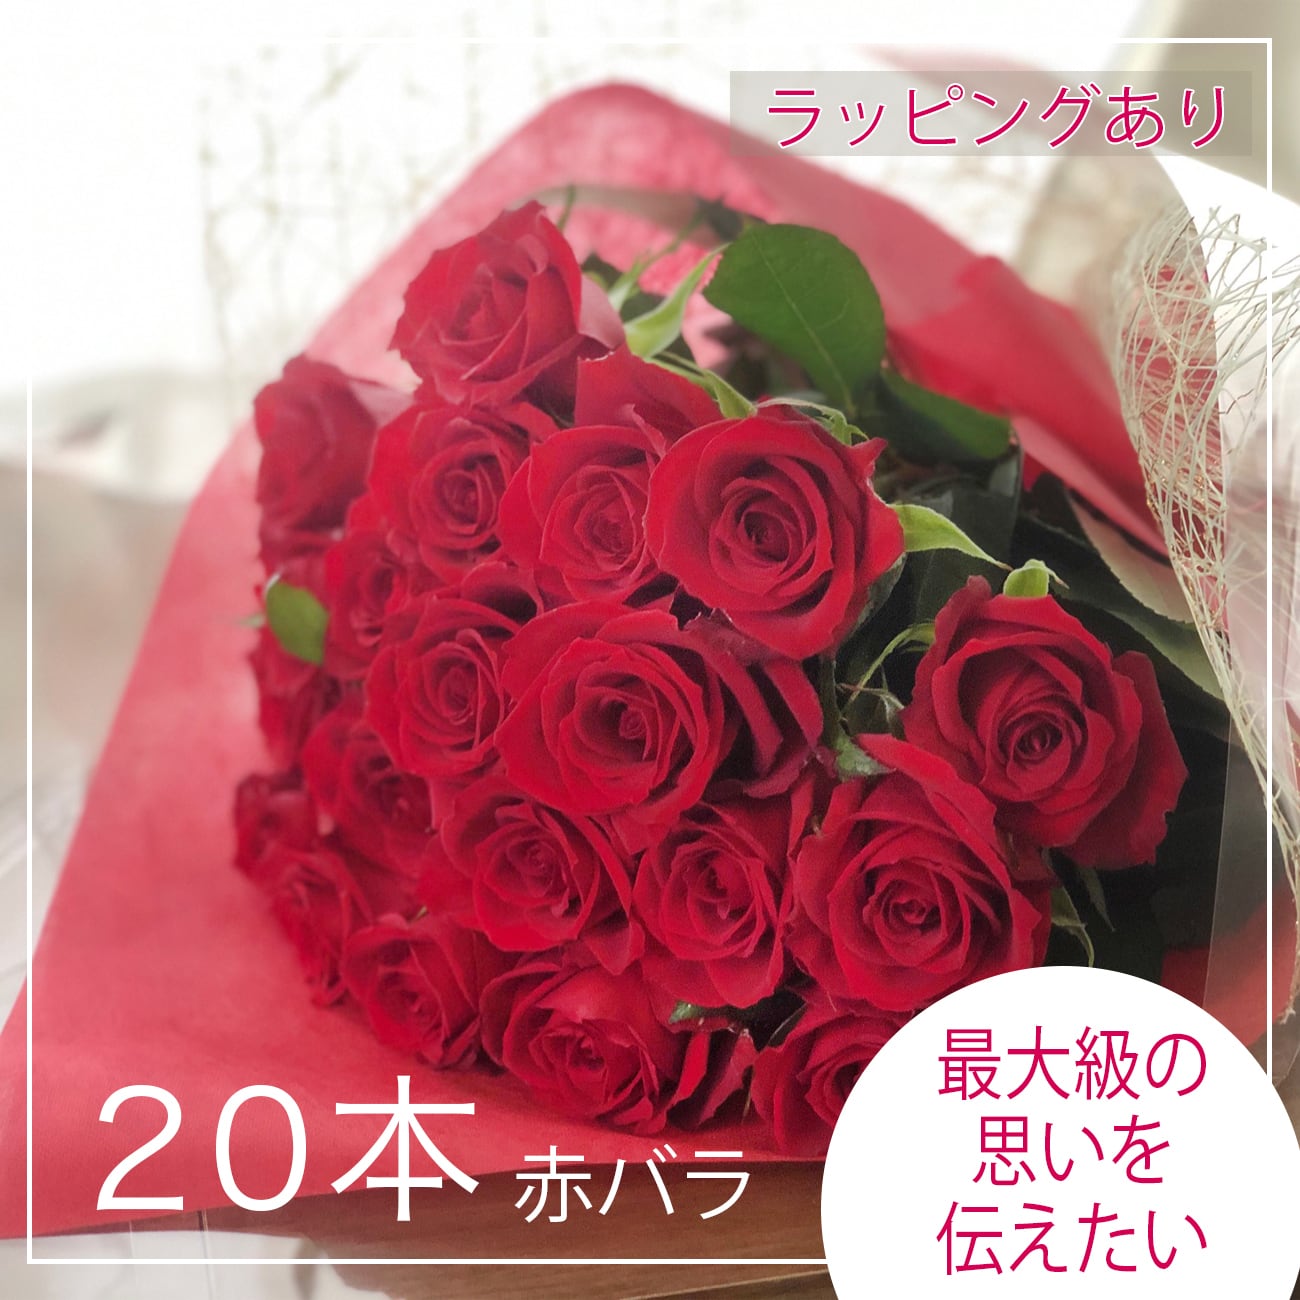 薔薇の花束セット贈答用20本赤